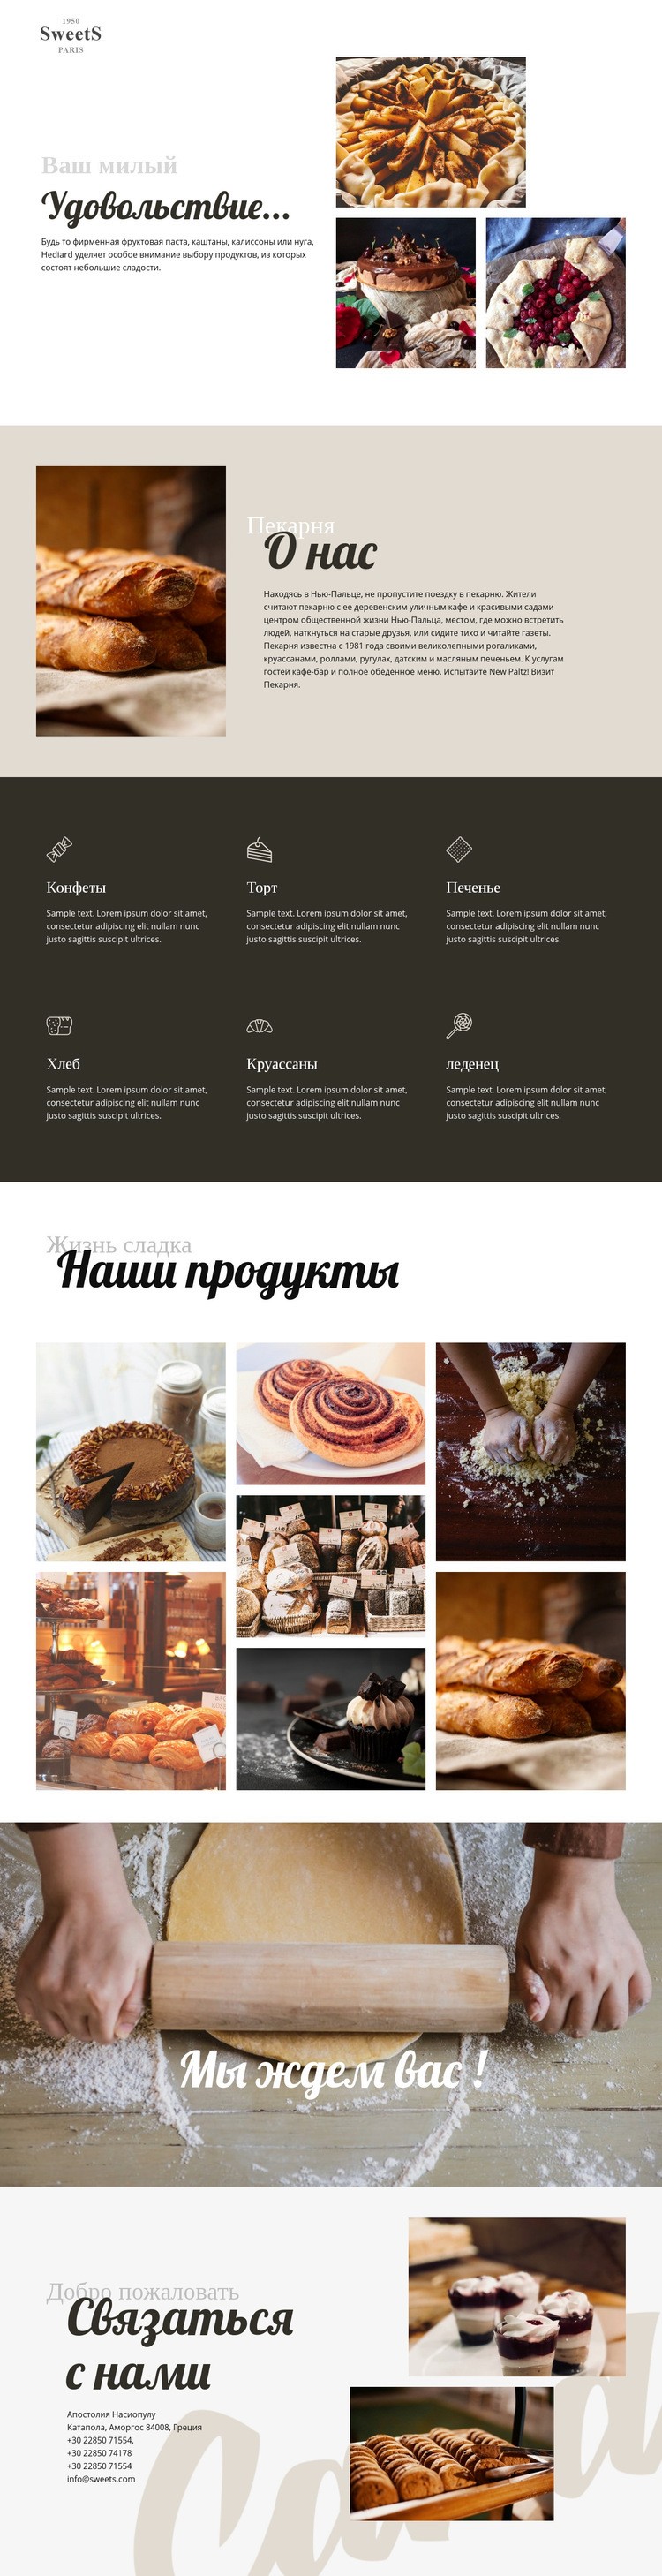 Торты и выпечка HTML шаблон